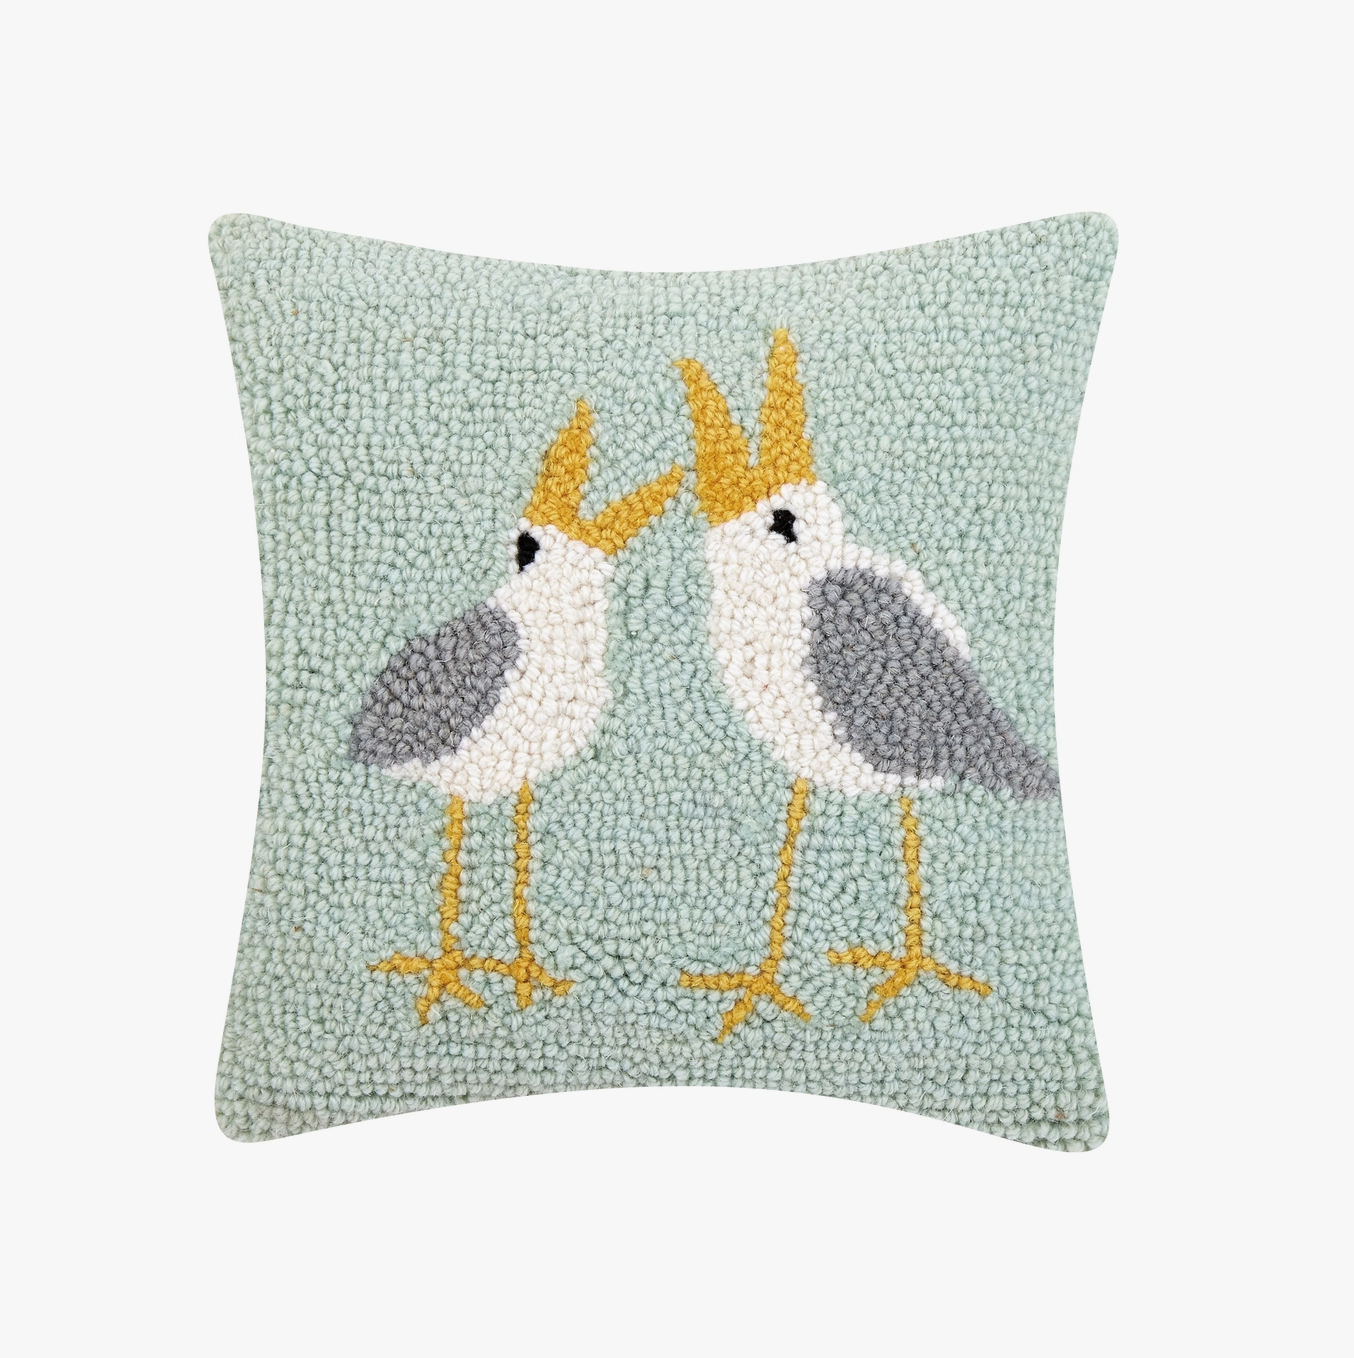 Seagulls Pillow